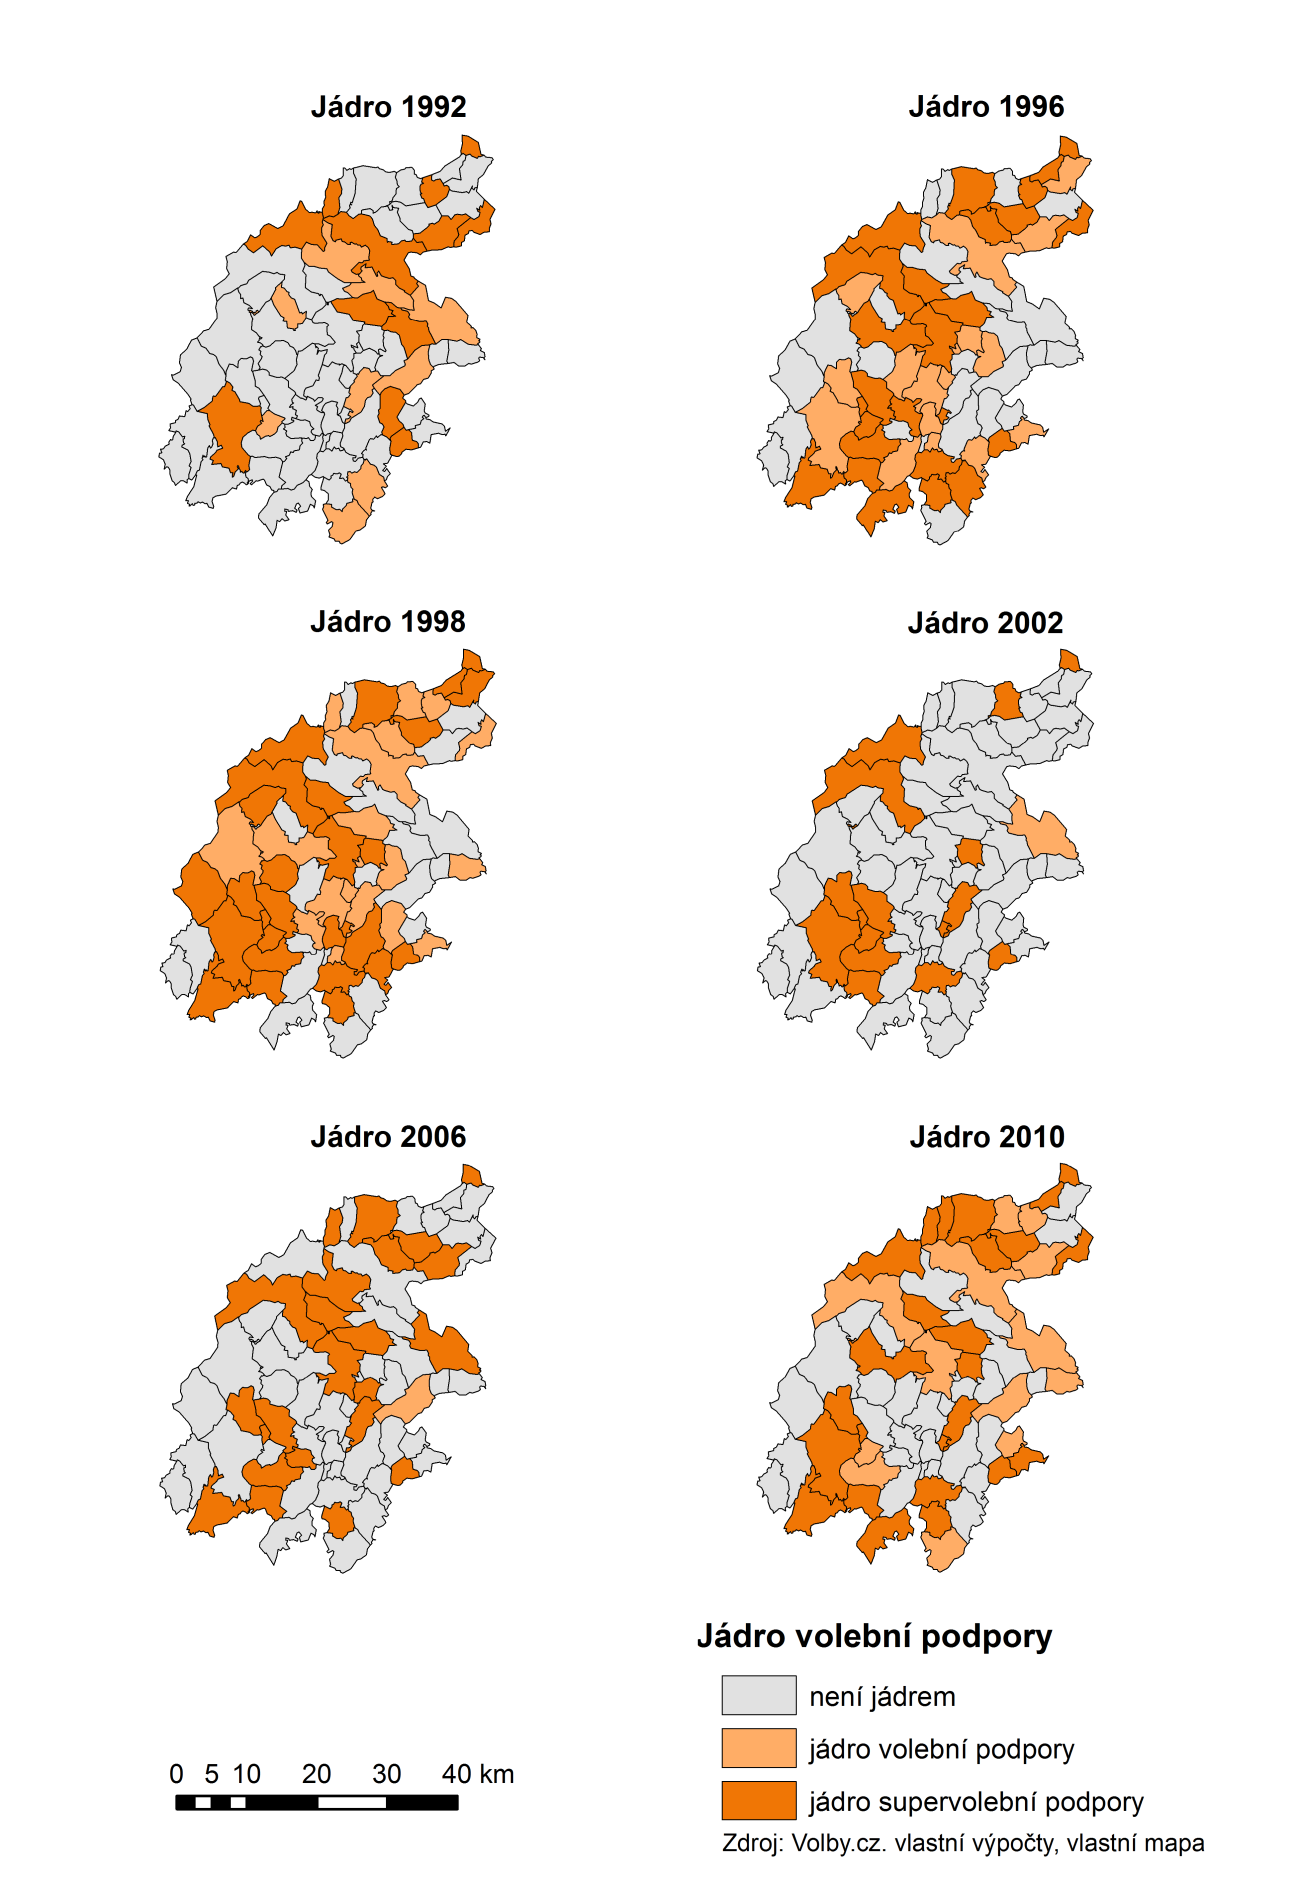 5.1.3 Vývoj jádra volební podpory v okrese Bruntál od roku 1990